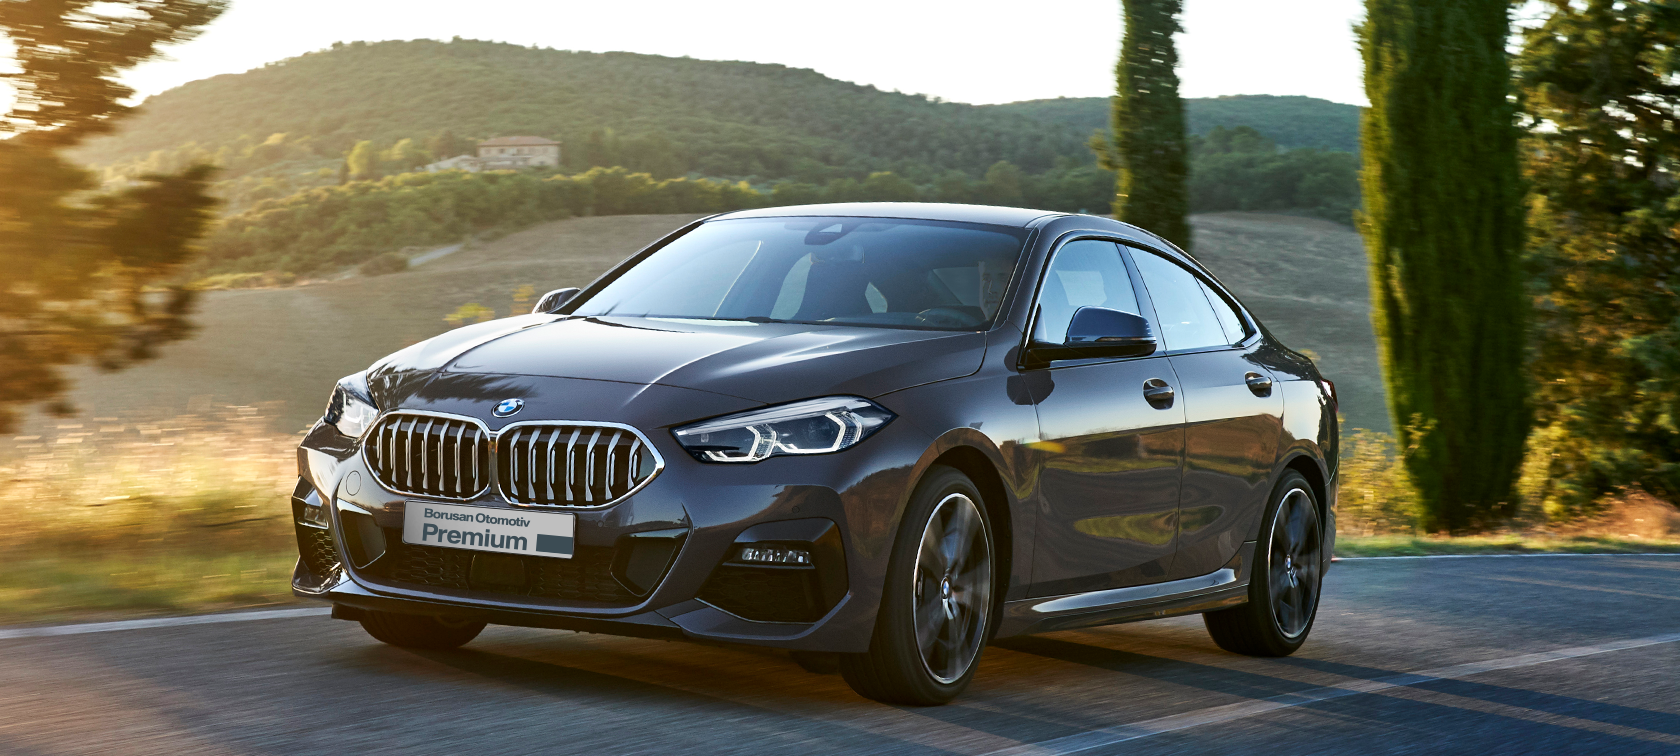 <p><span style="color: rgb(50, 49, 48);">Uzun Dönem Kiralama Ayrıcalıklarıyla BMW 2 Serisi Borusan Otomotiv Premium'da.</span></p>